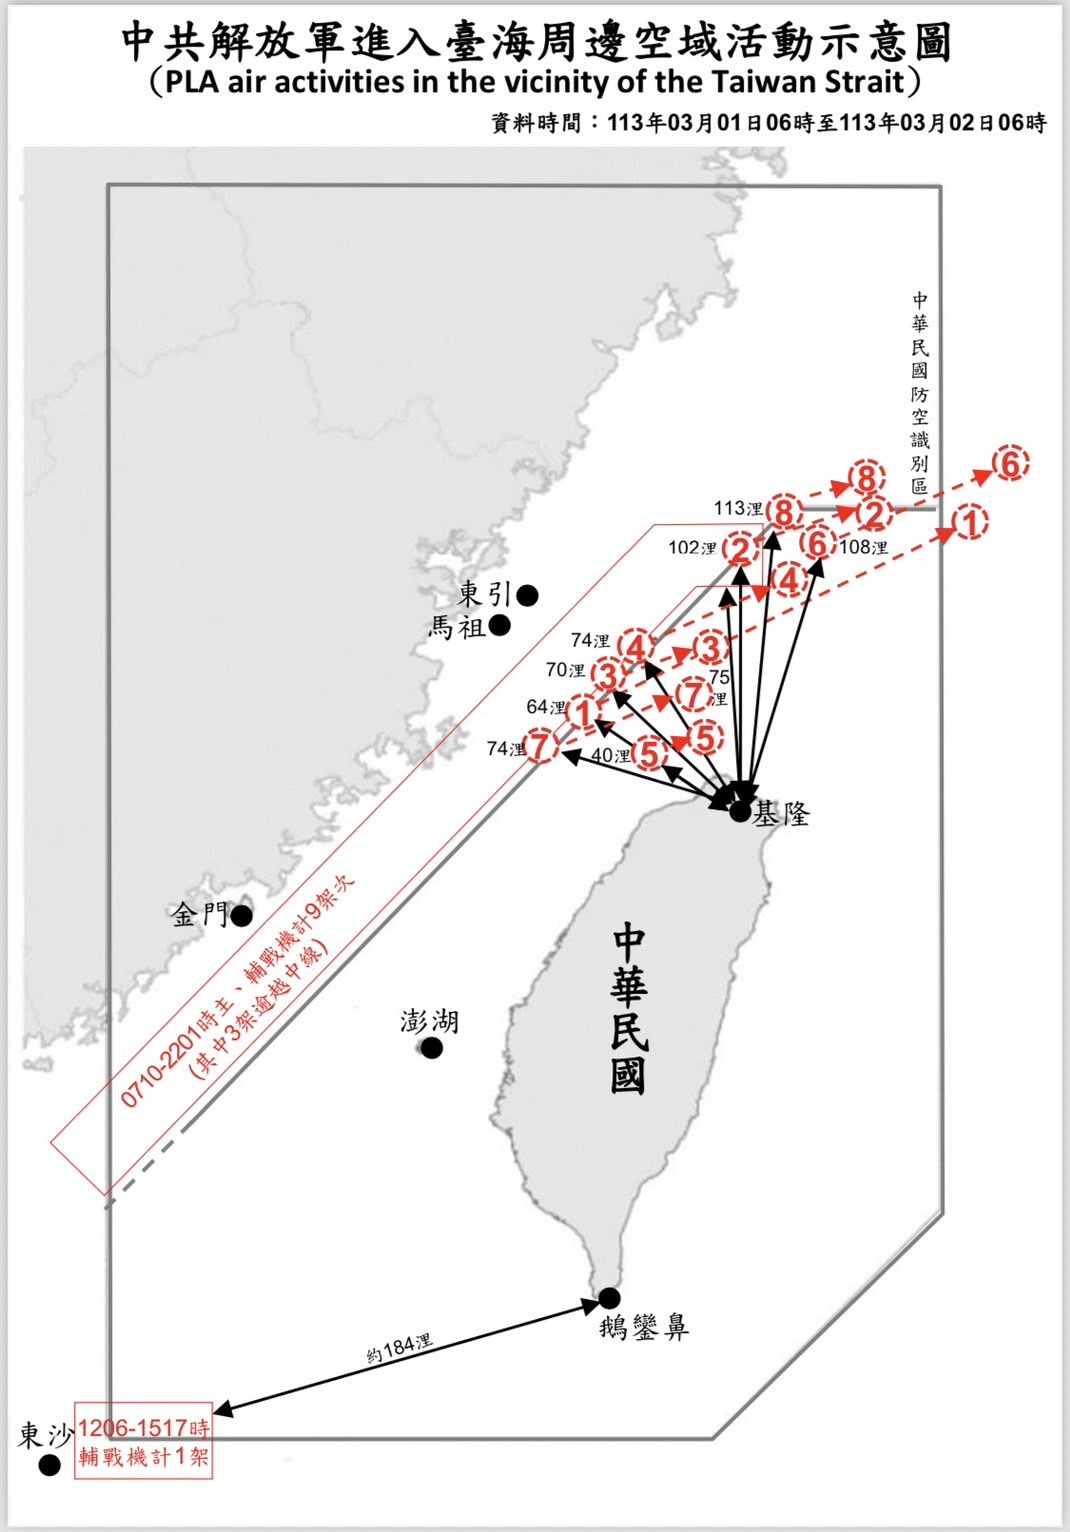 大量中國氣球現蹤北部海域  最近離基隆僅40浬